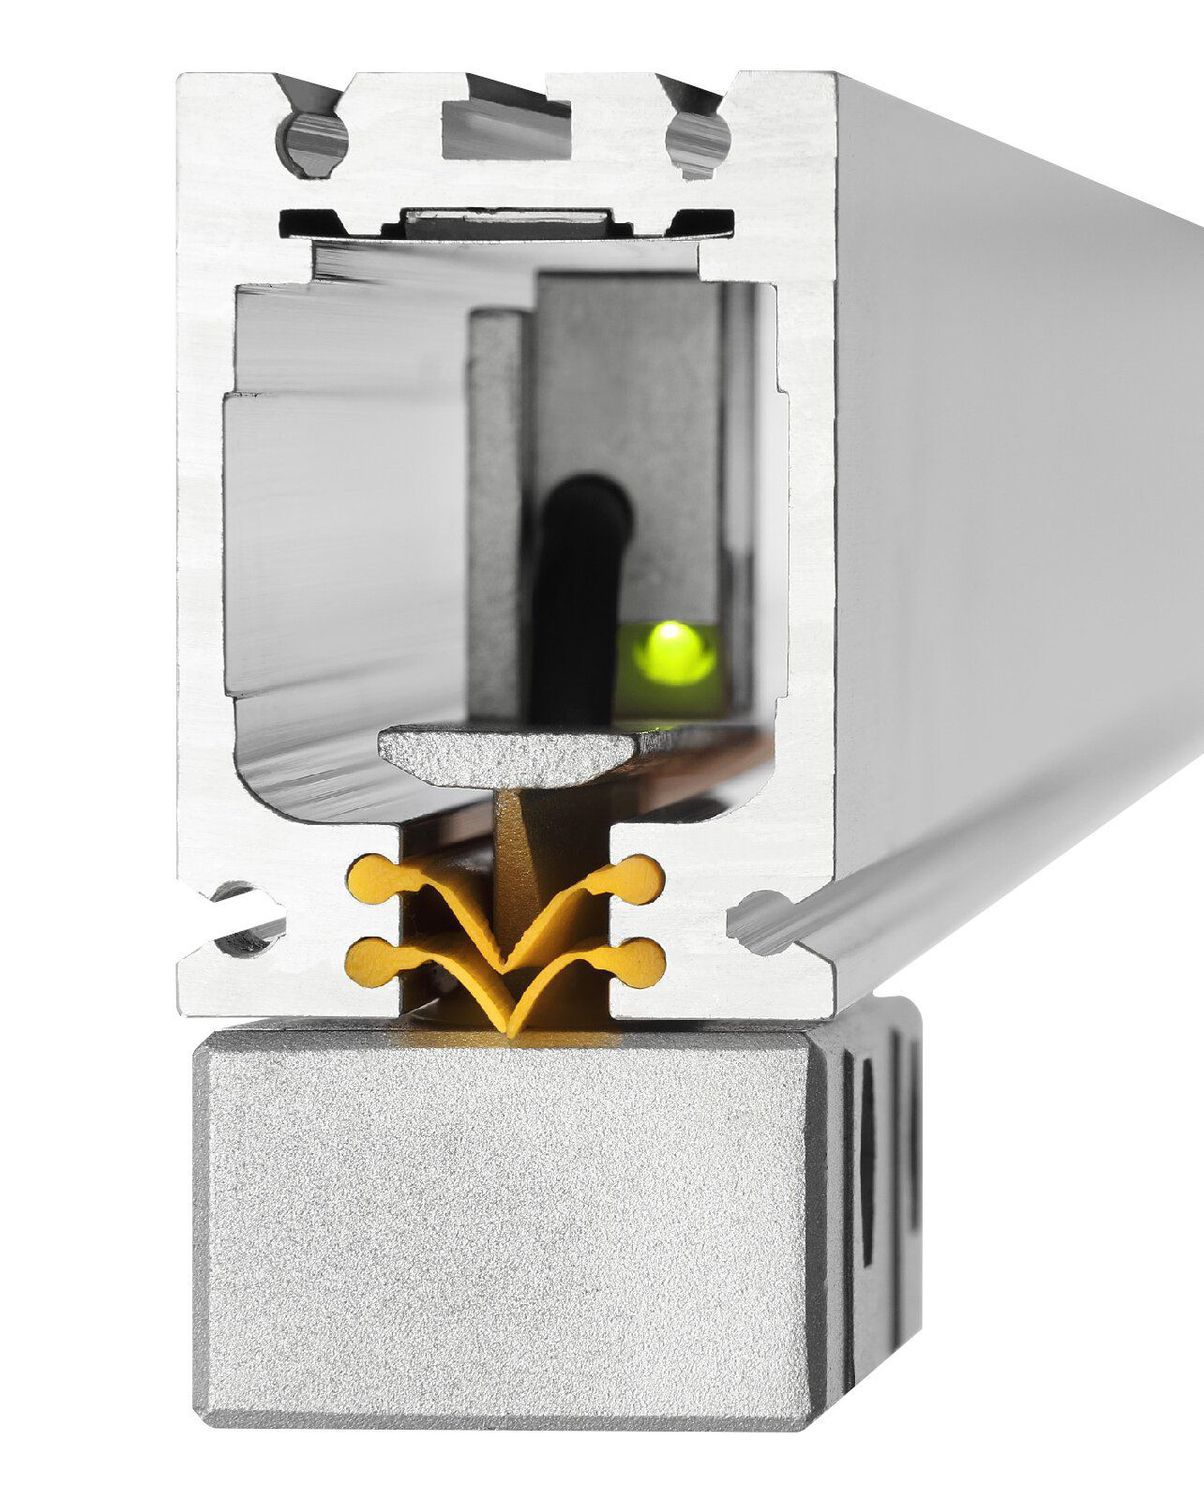 K+C Magnetmaßstab MSX 250 mm - 5 µm | Verfahrweg 260 mm